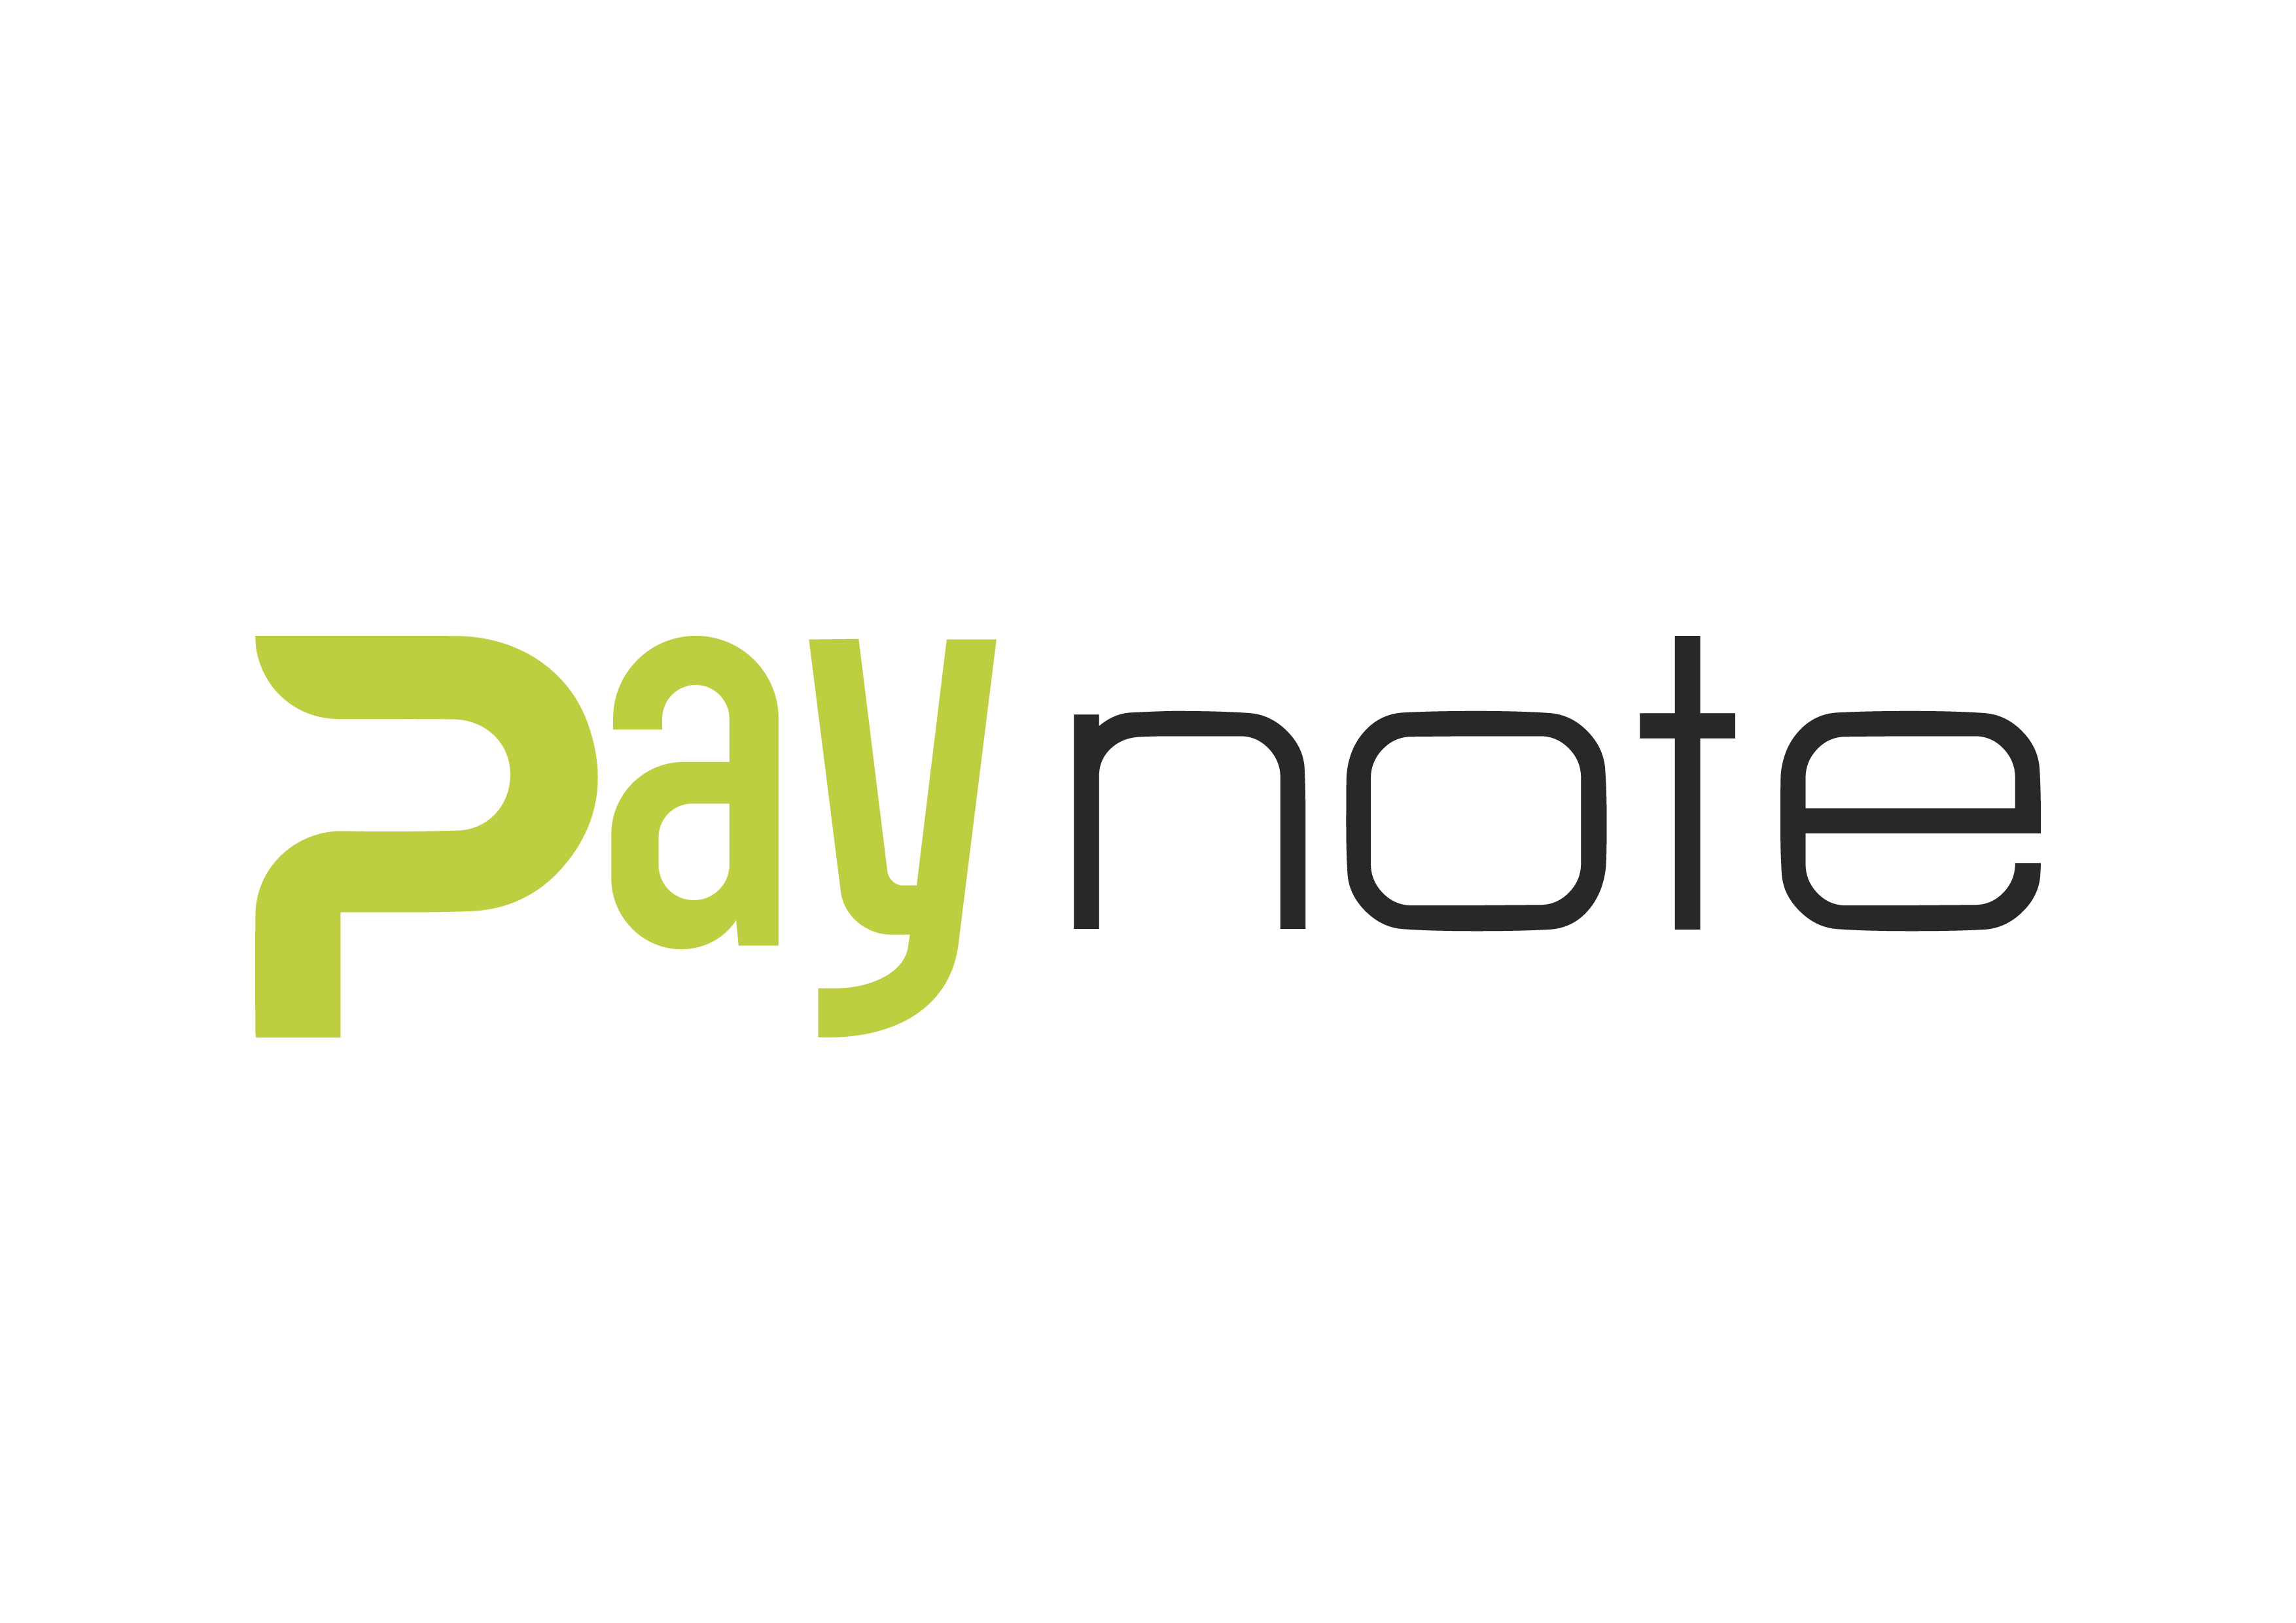 Paynote